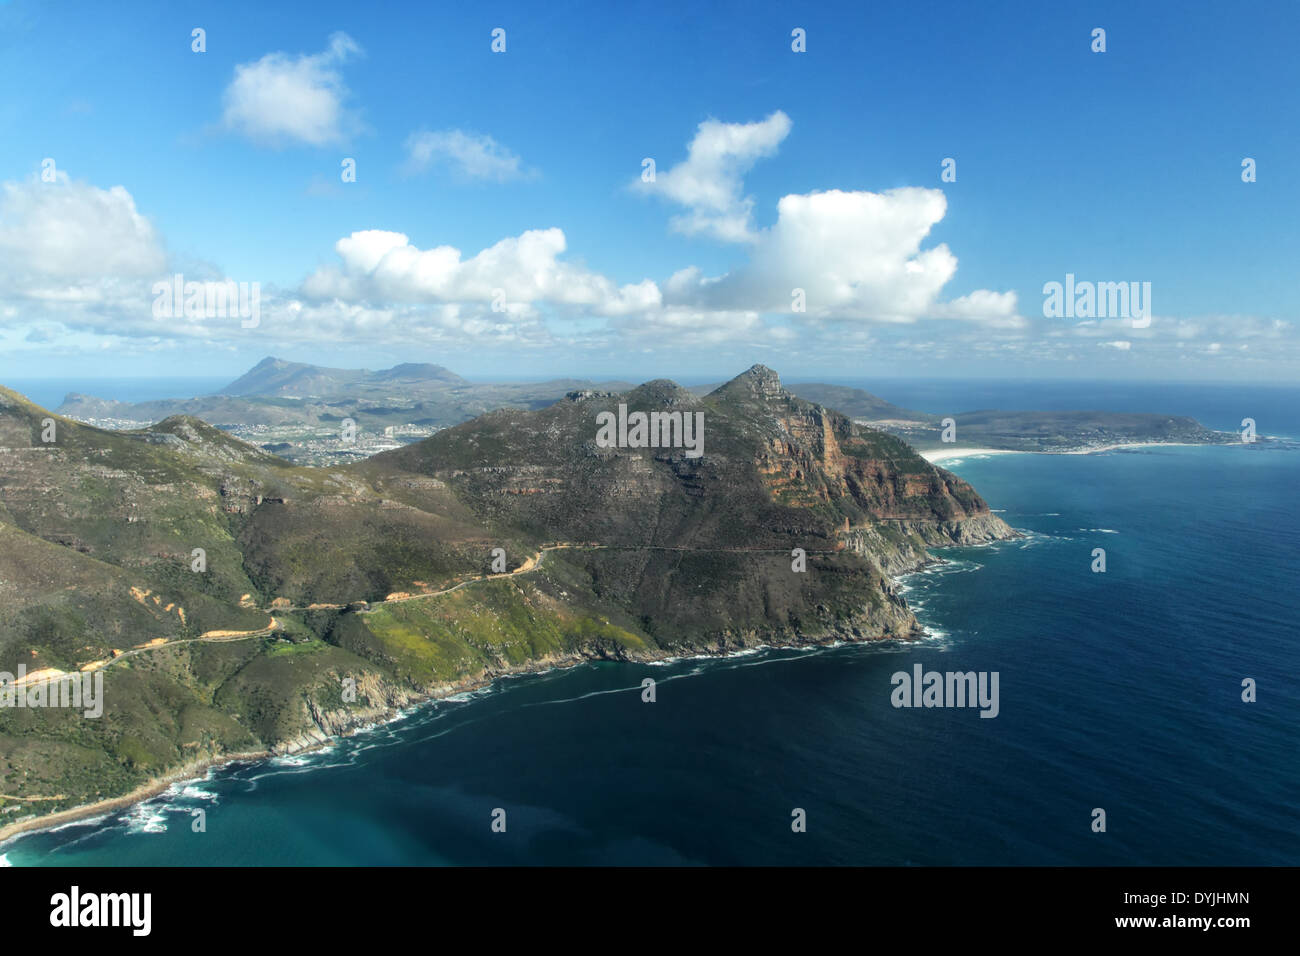 Vista aerea della Baia di Hout Bay, sobborgo di Cape Town, Sud Africa, e vista su Chapmans Peak Drive e la Penisola del Capo. Foto Stock